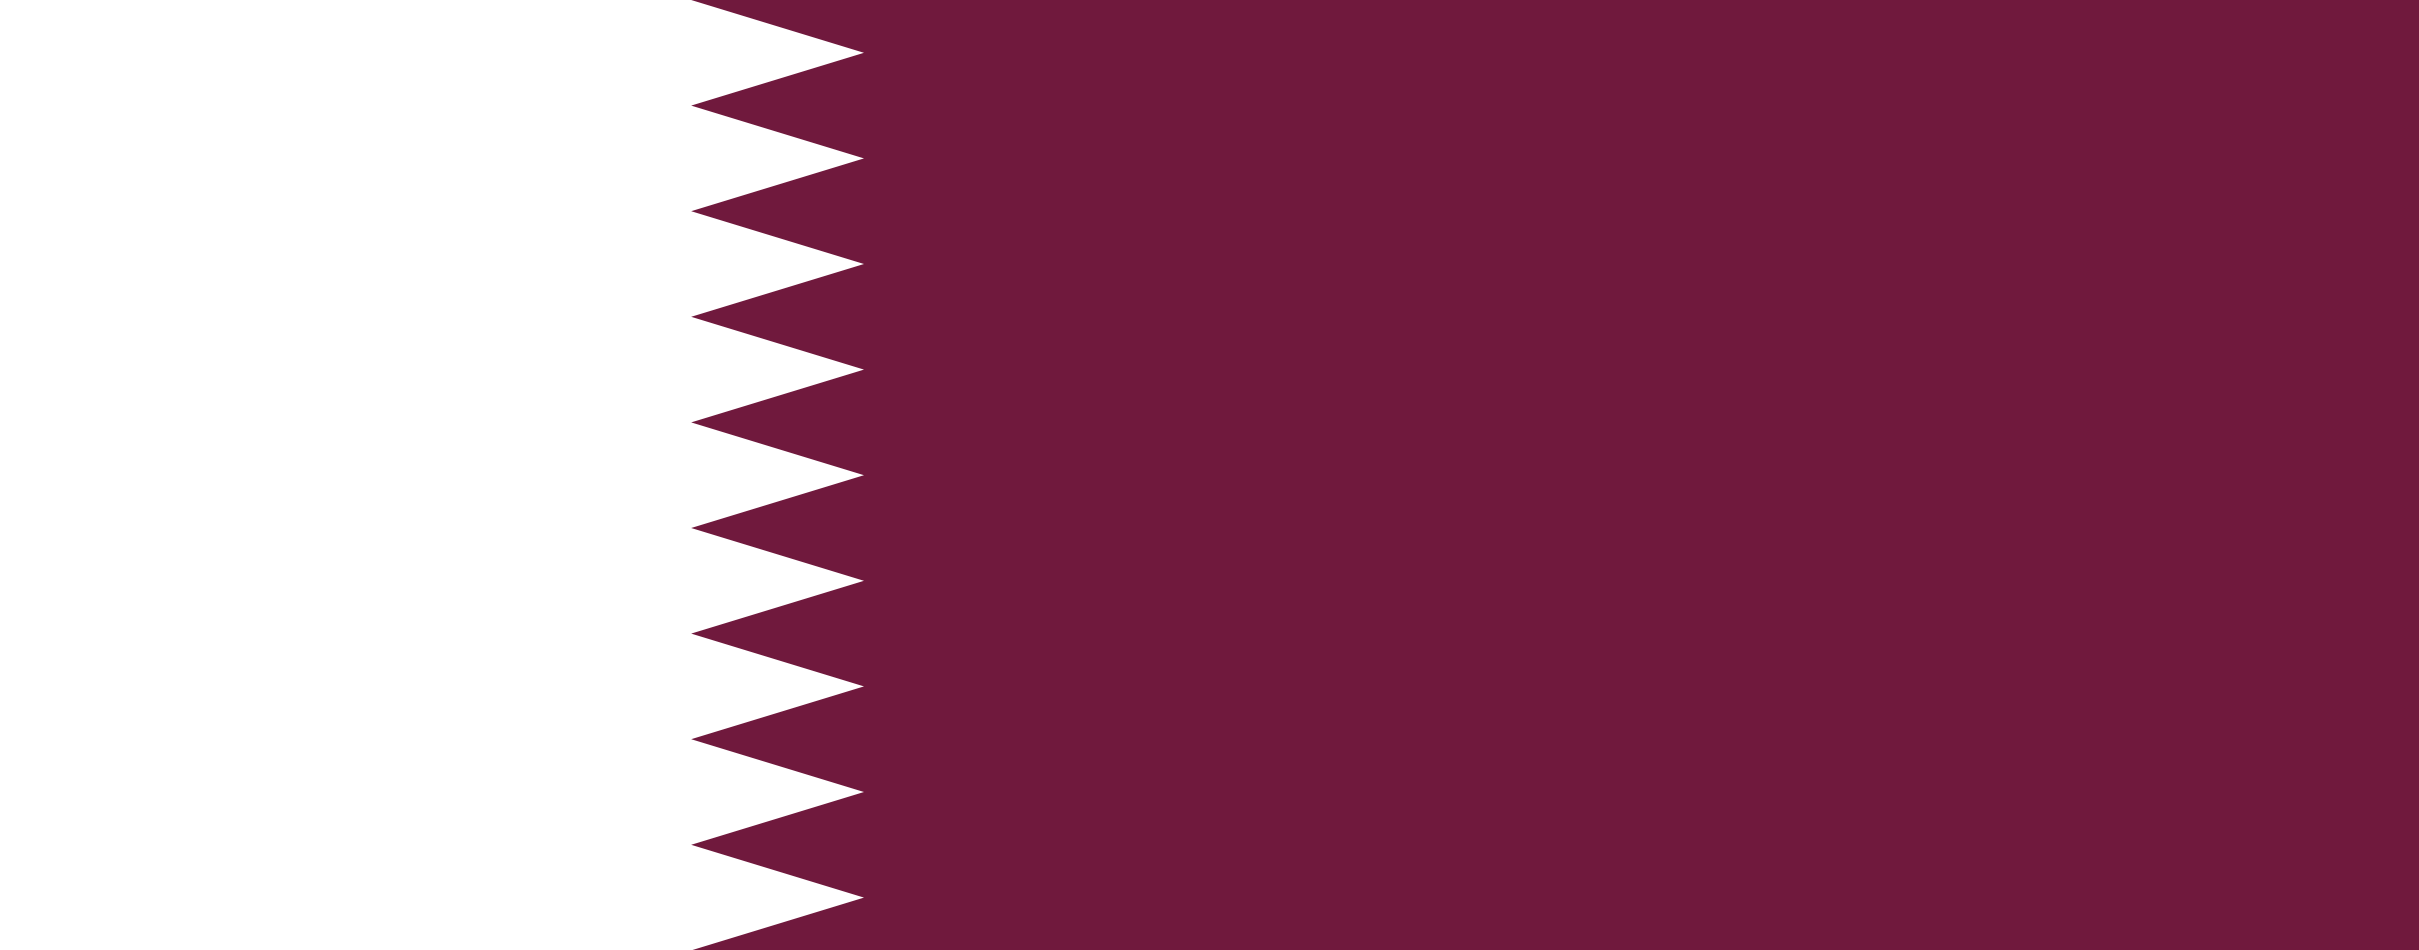 flag Qatar